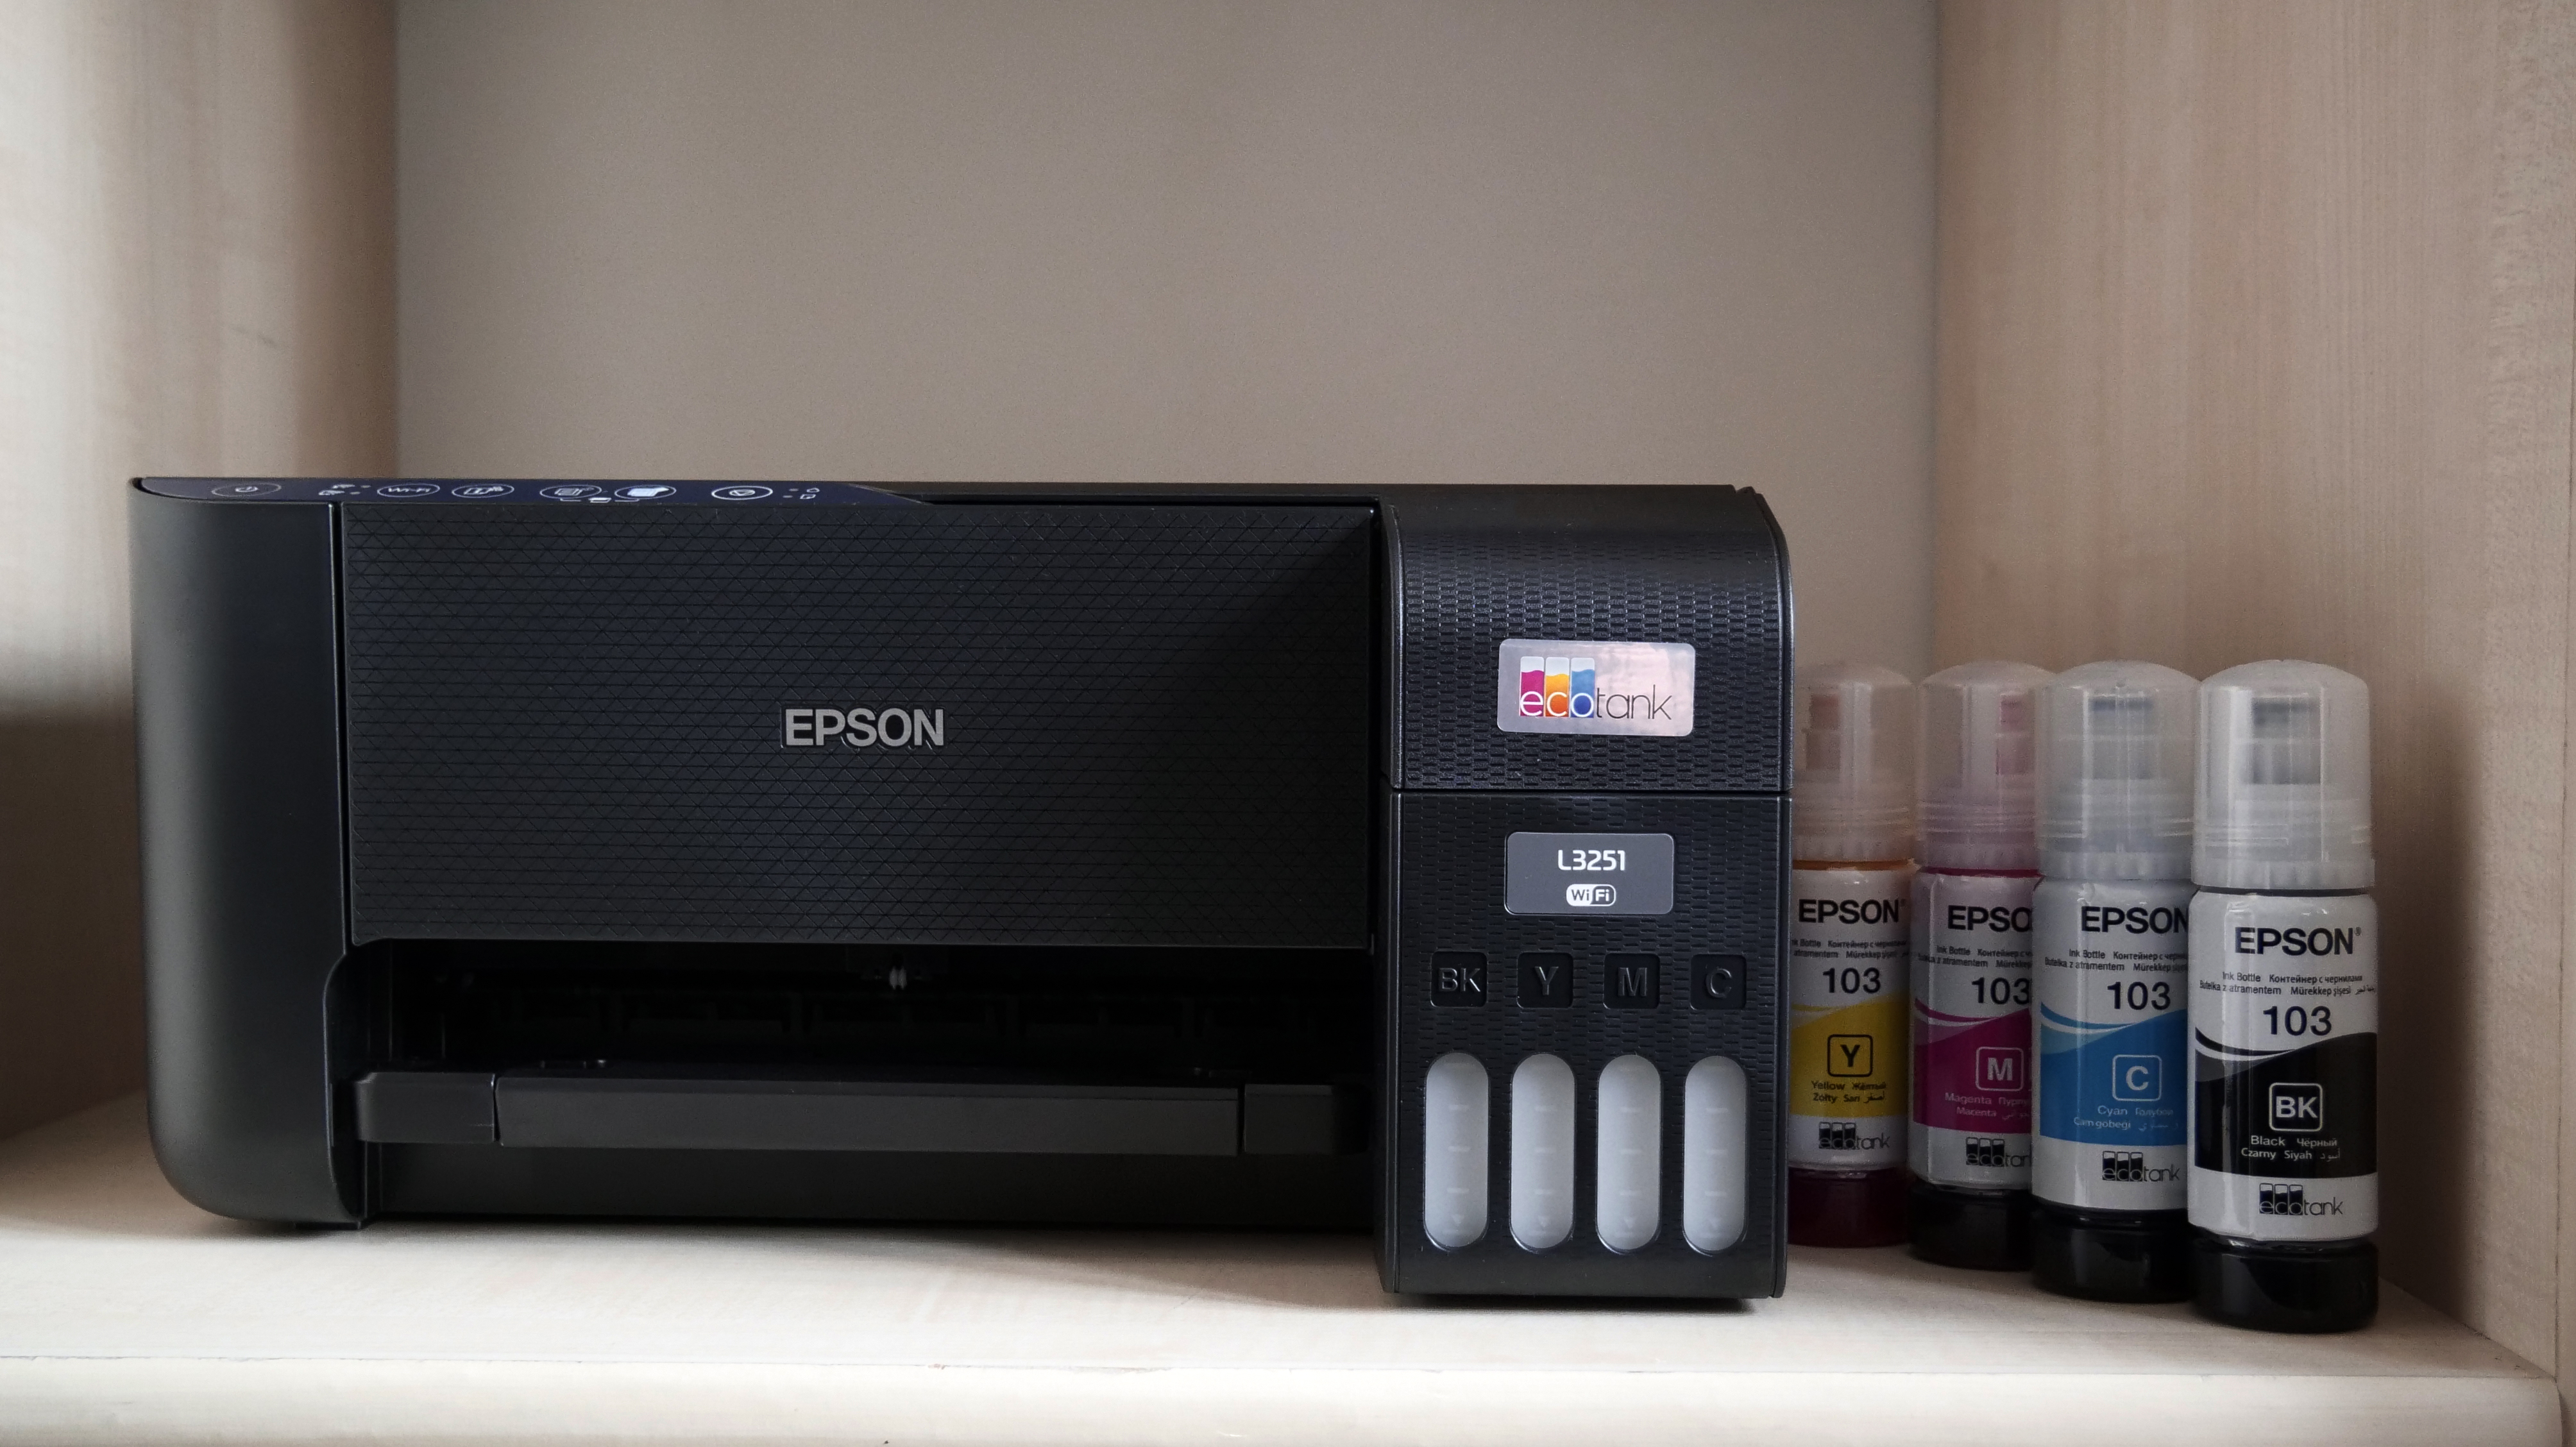 EPSON EcoTank L3251 - tanie drukowanie w kompaktowym wydaniu - PC World - Testy i Ceny sprzętu PC, RTV, Foto, Porady IT, Download, Aktualności